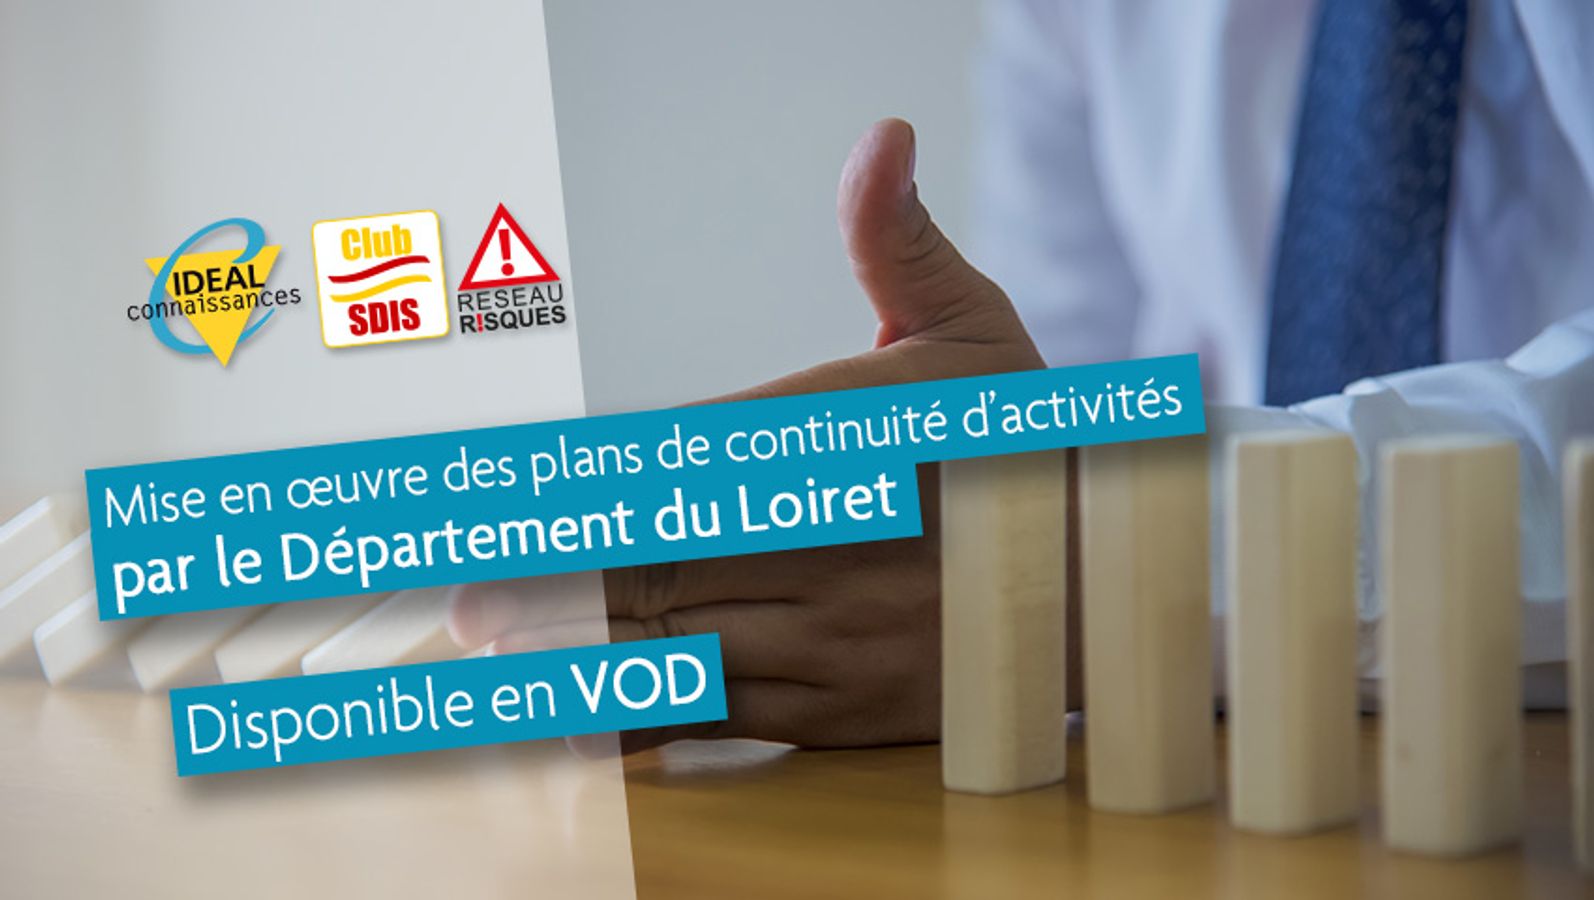 Mise en œuvre des plans de continuité d’activité par le Département du Loiret